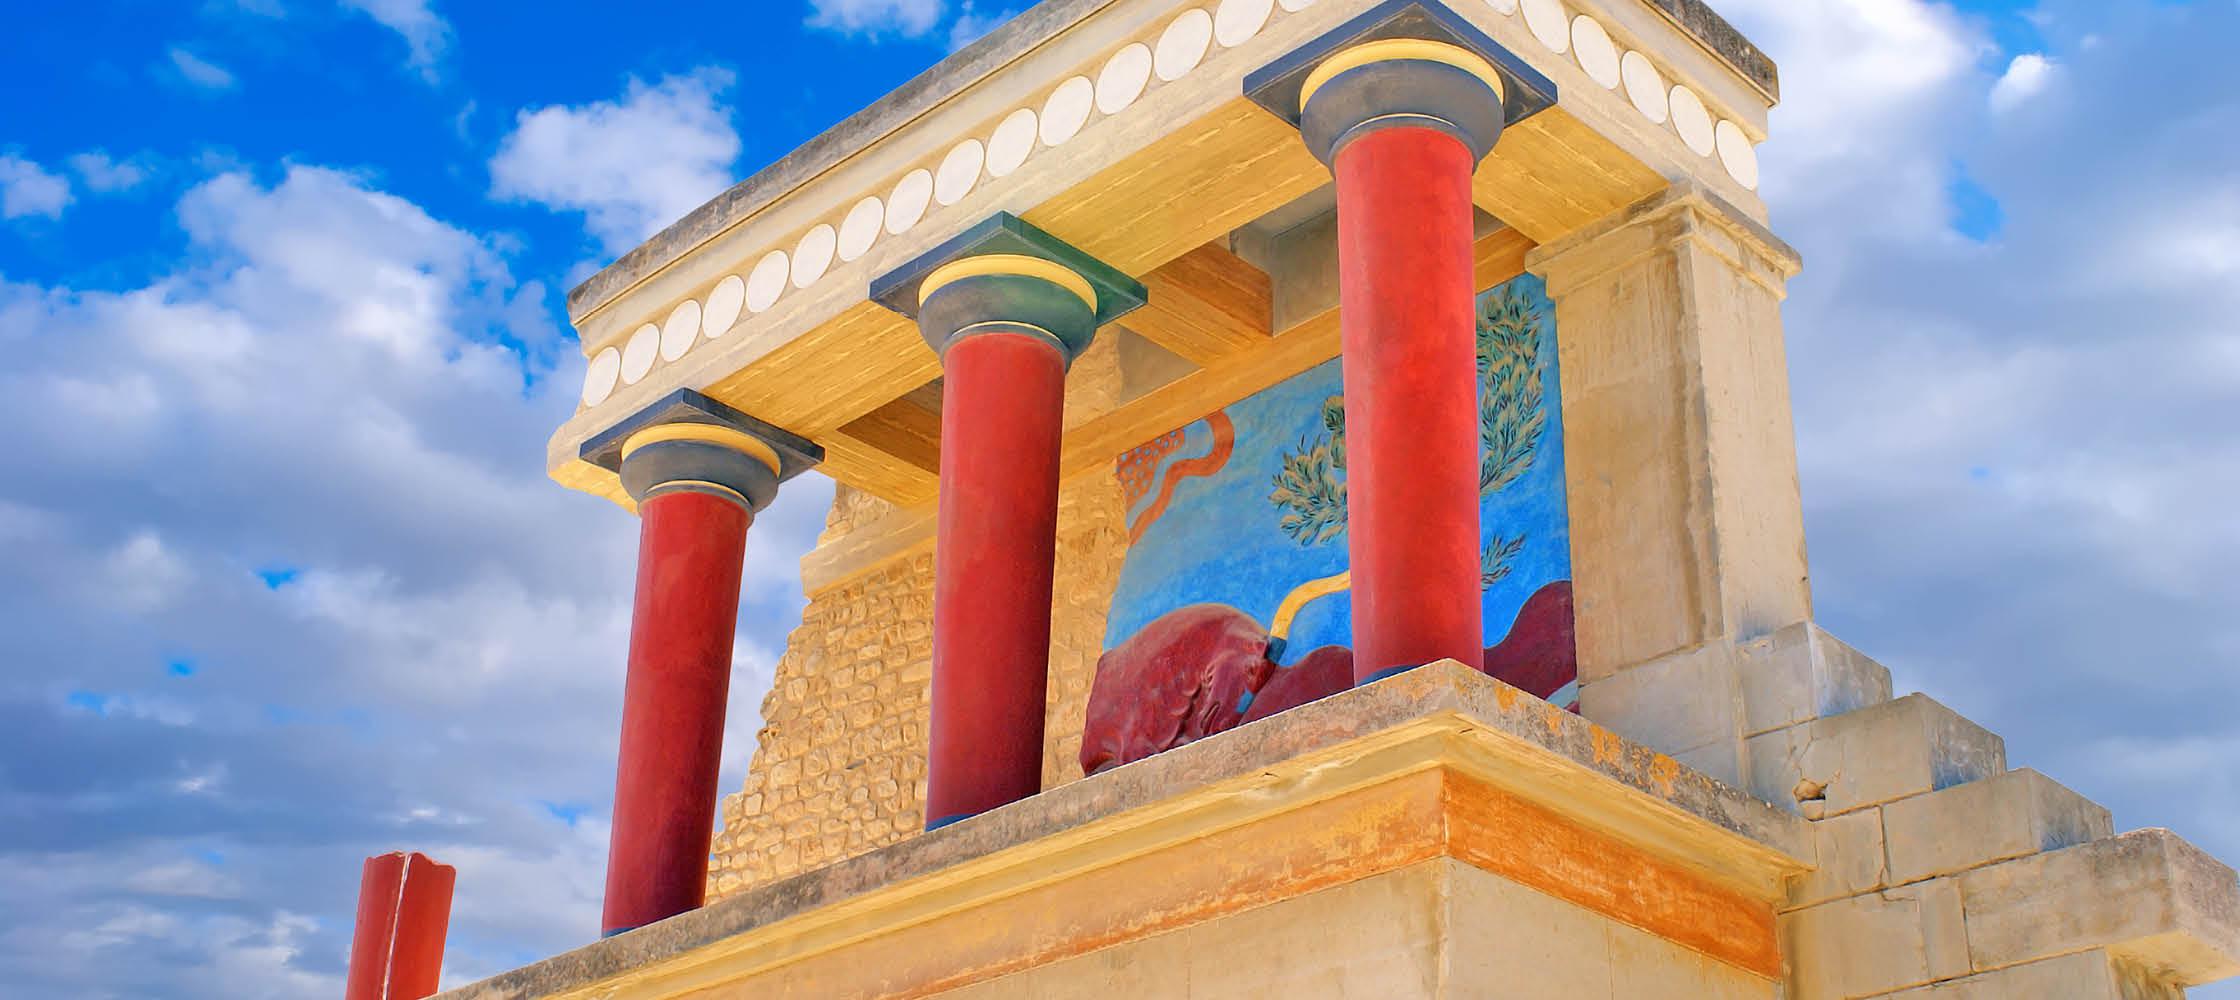 Knossos Palace i Chania på Kreta